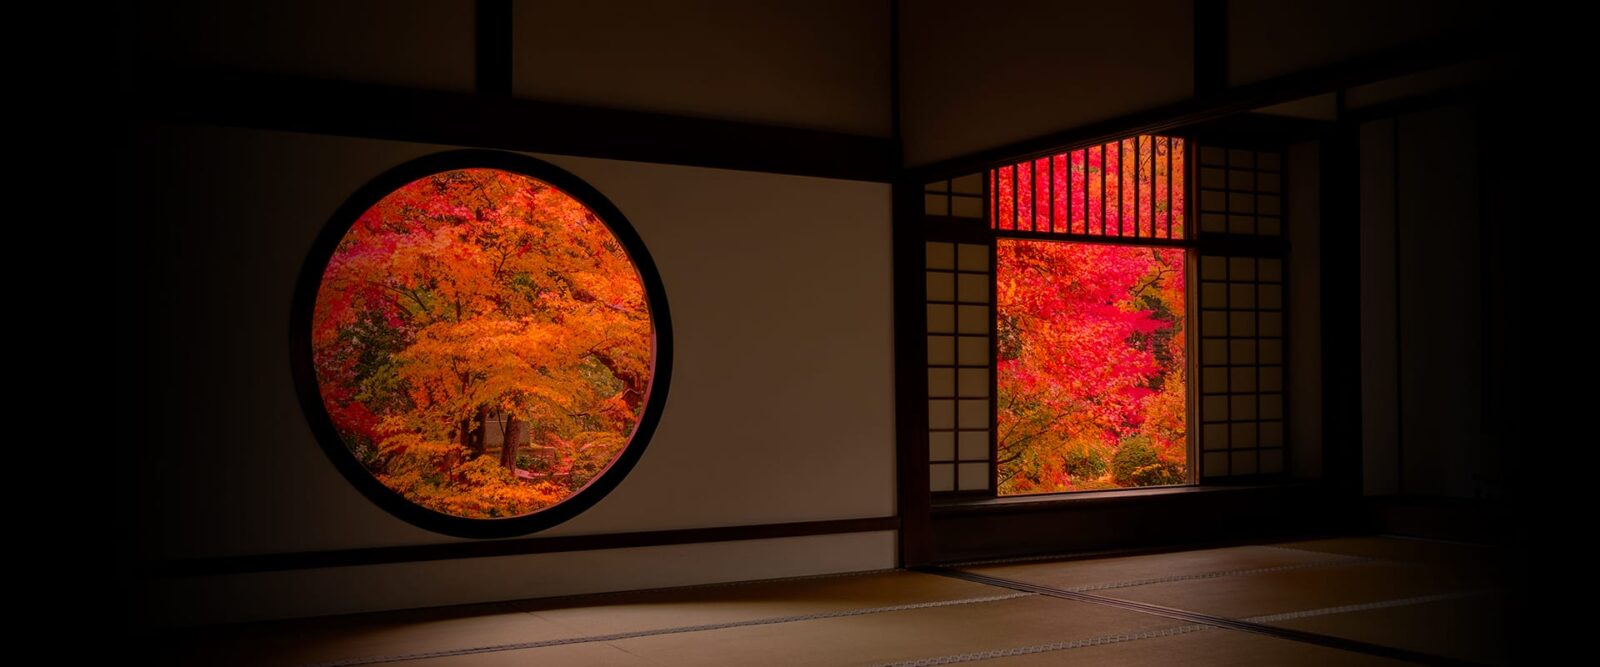 京都最美的景點之一 源光庵